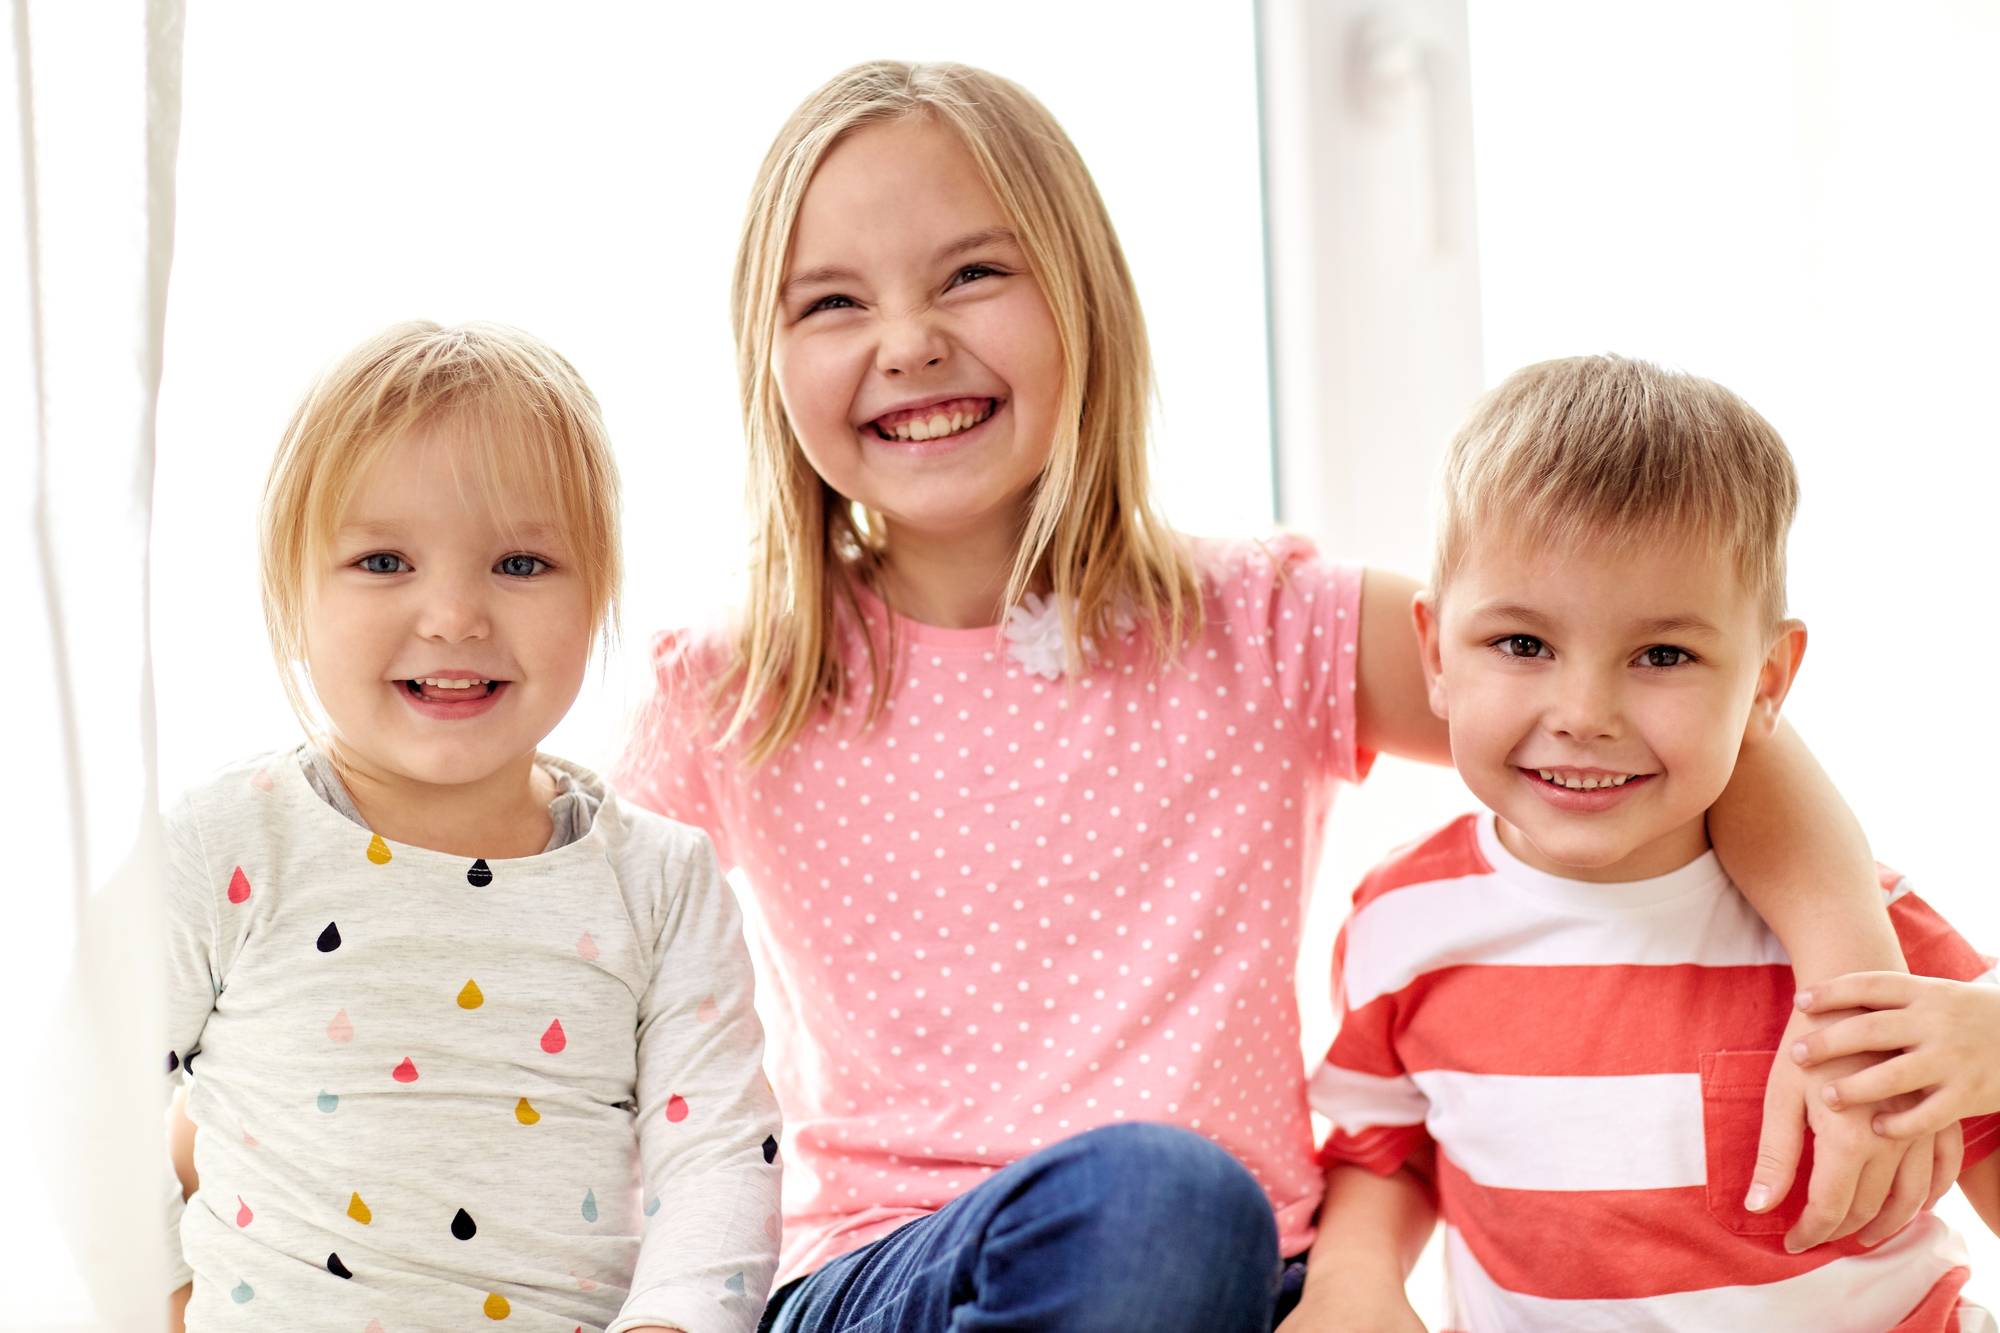 Three siblings smiling at the camera